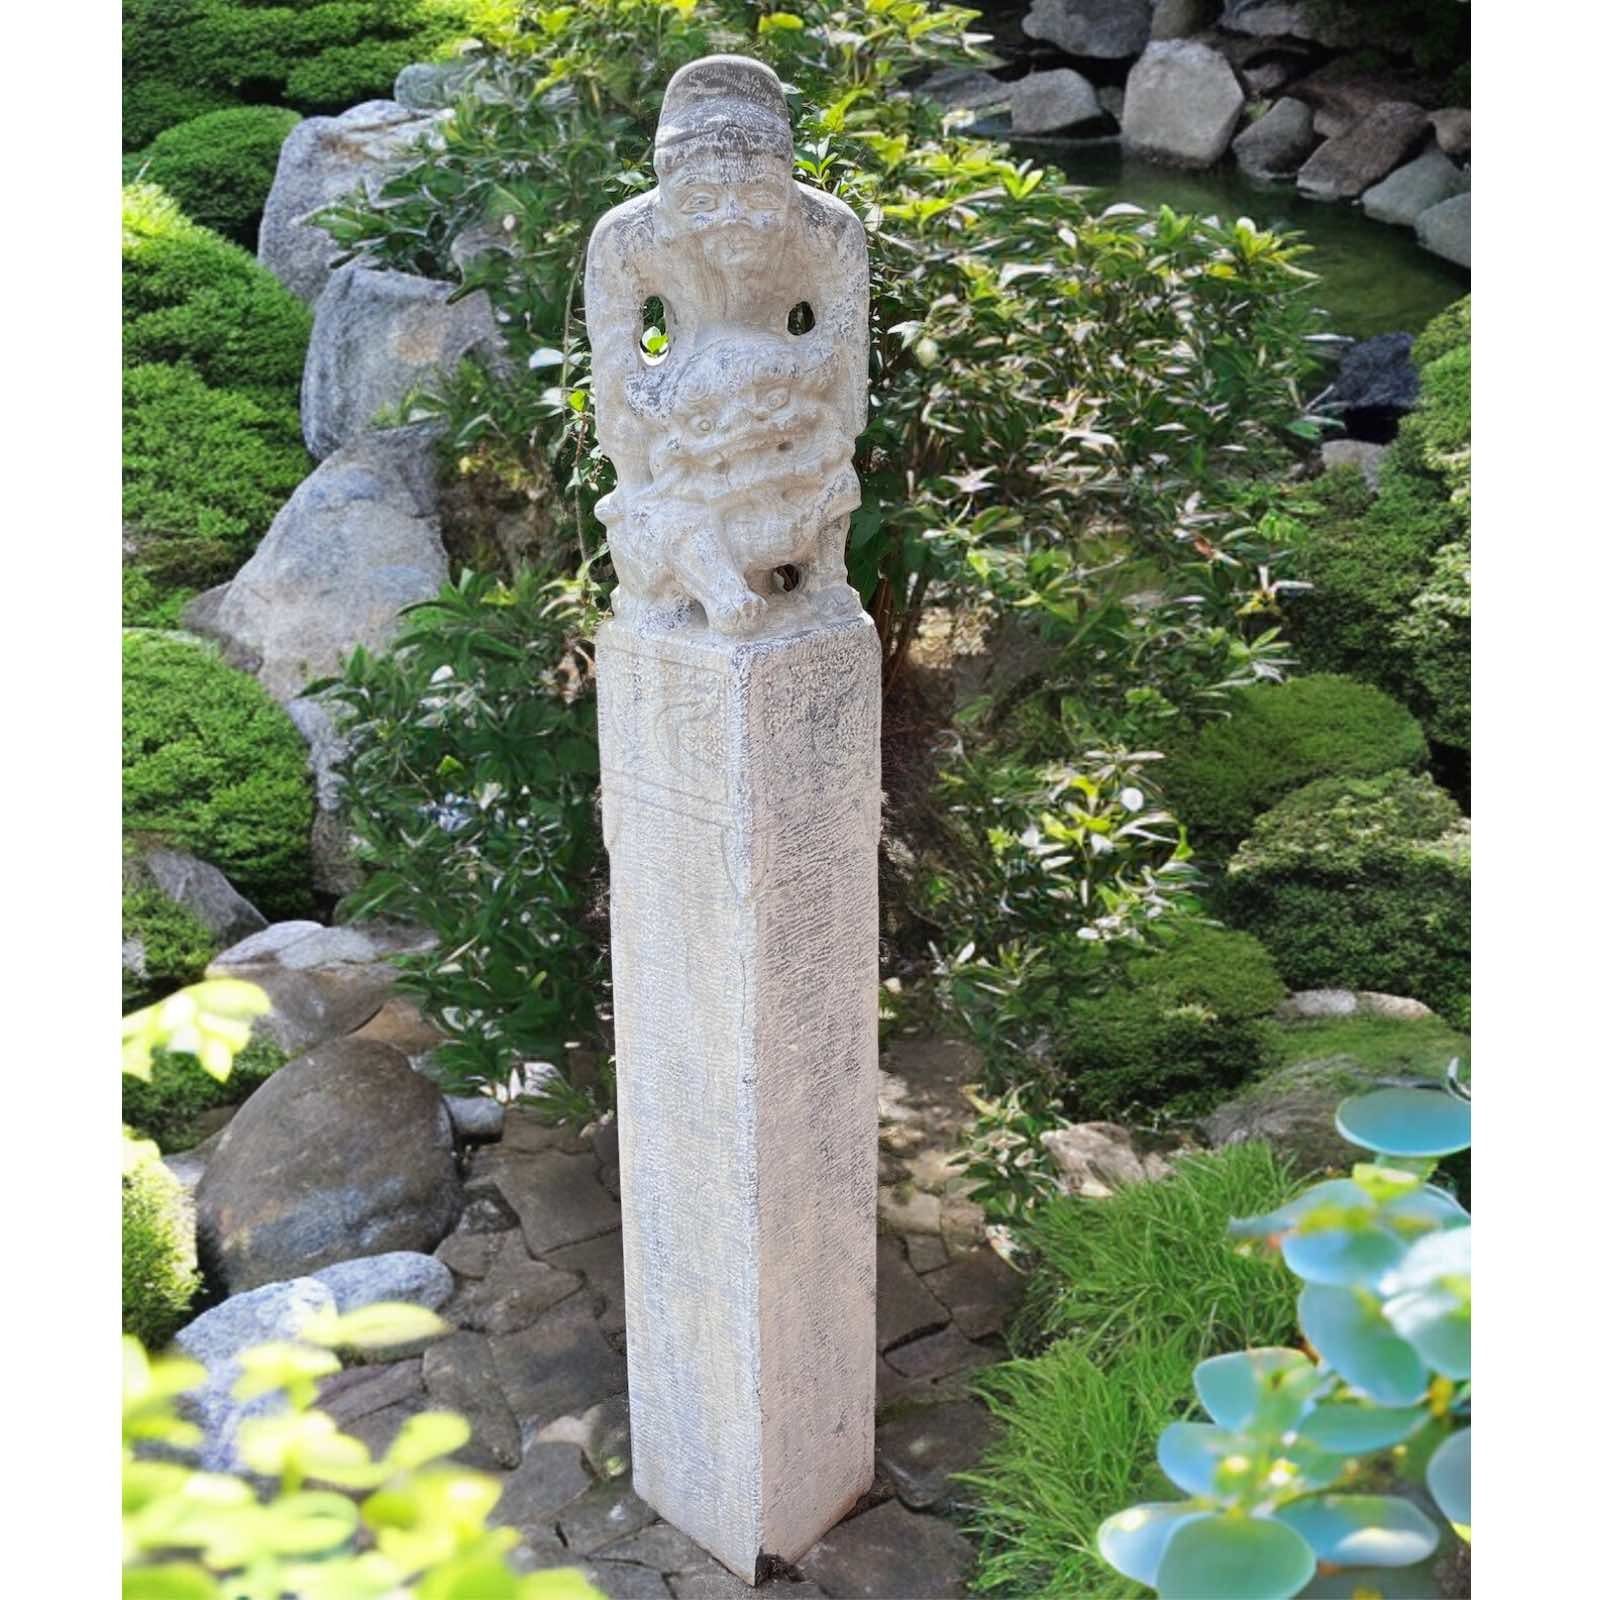 Naturstein 152cm Asiatischer Asien groß Wächterlöwe Gartenfigur LifeStyle Tempelwächter